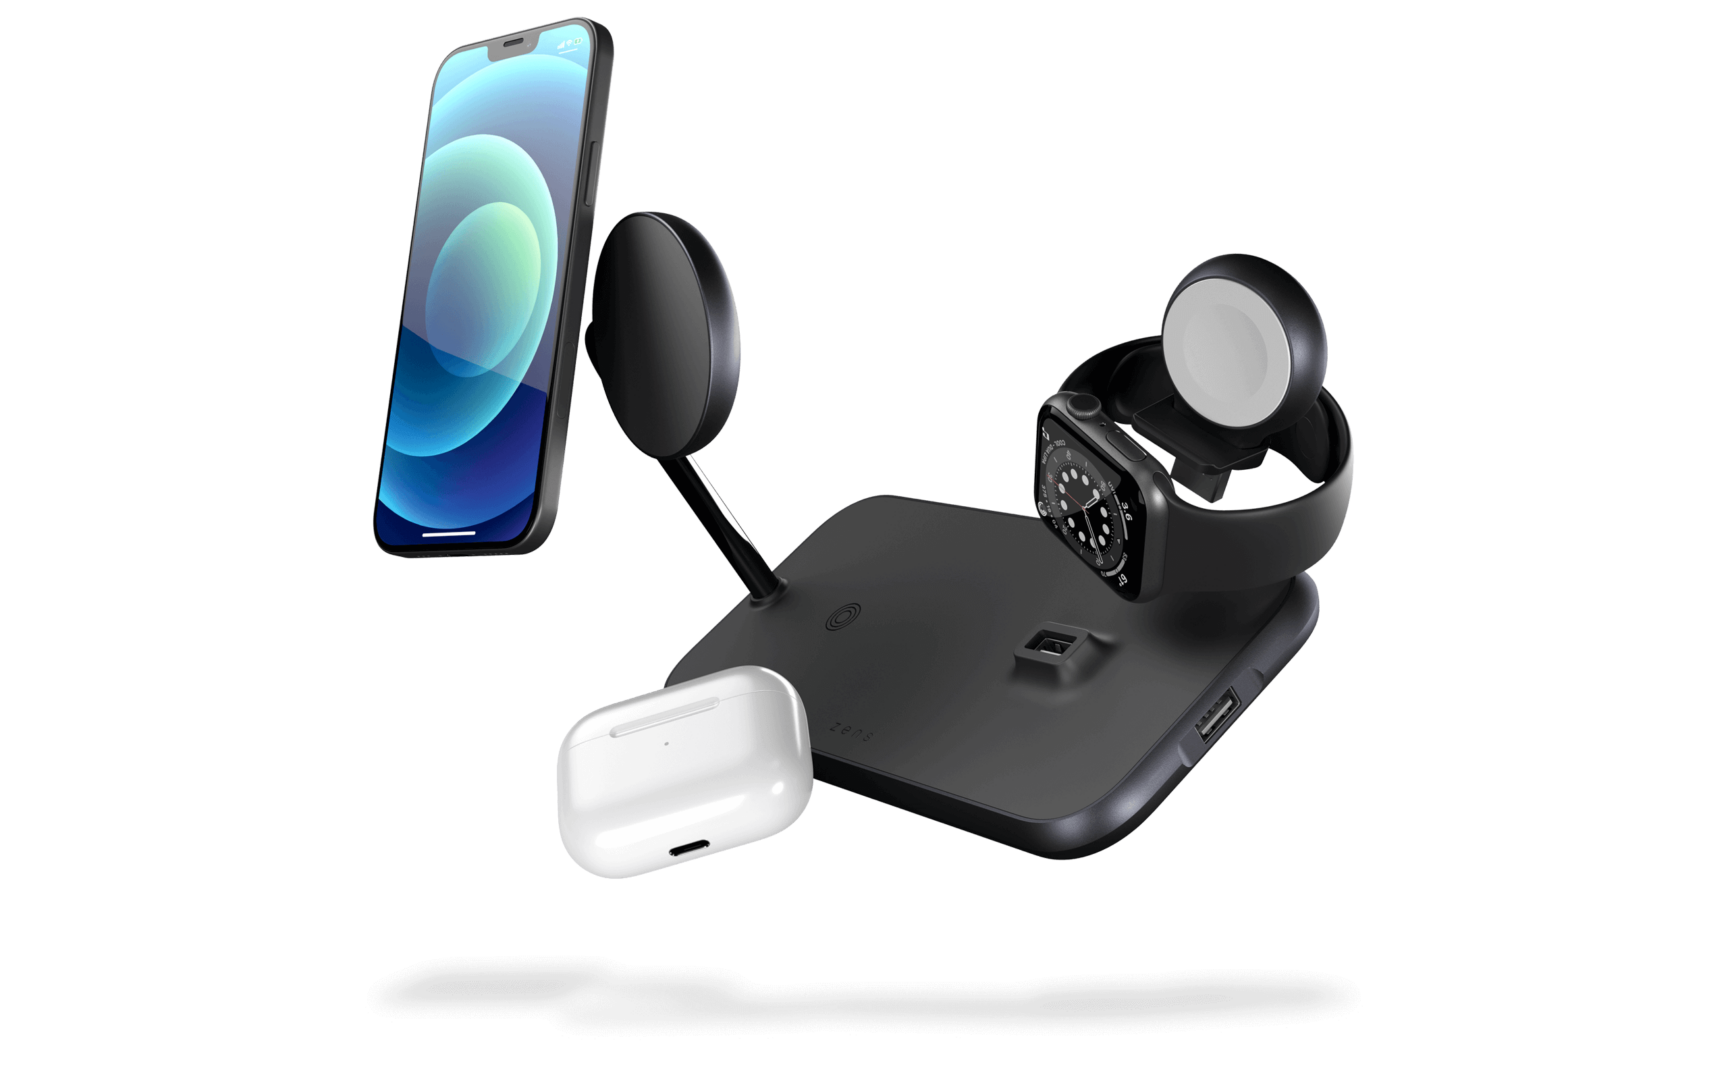 MagSafe draadloze oplader met iPhone, AirPods en Apple Watch